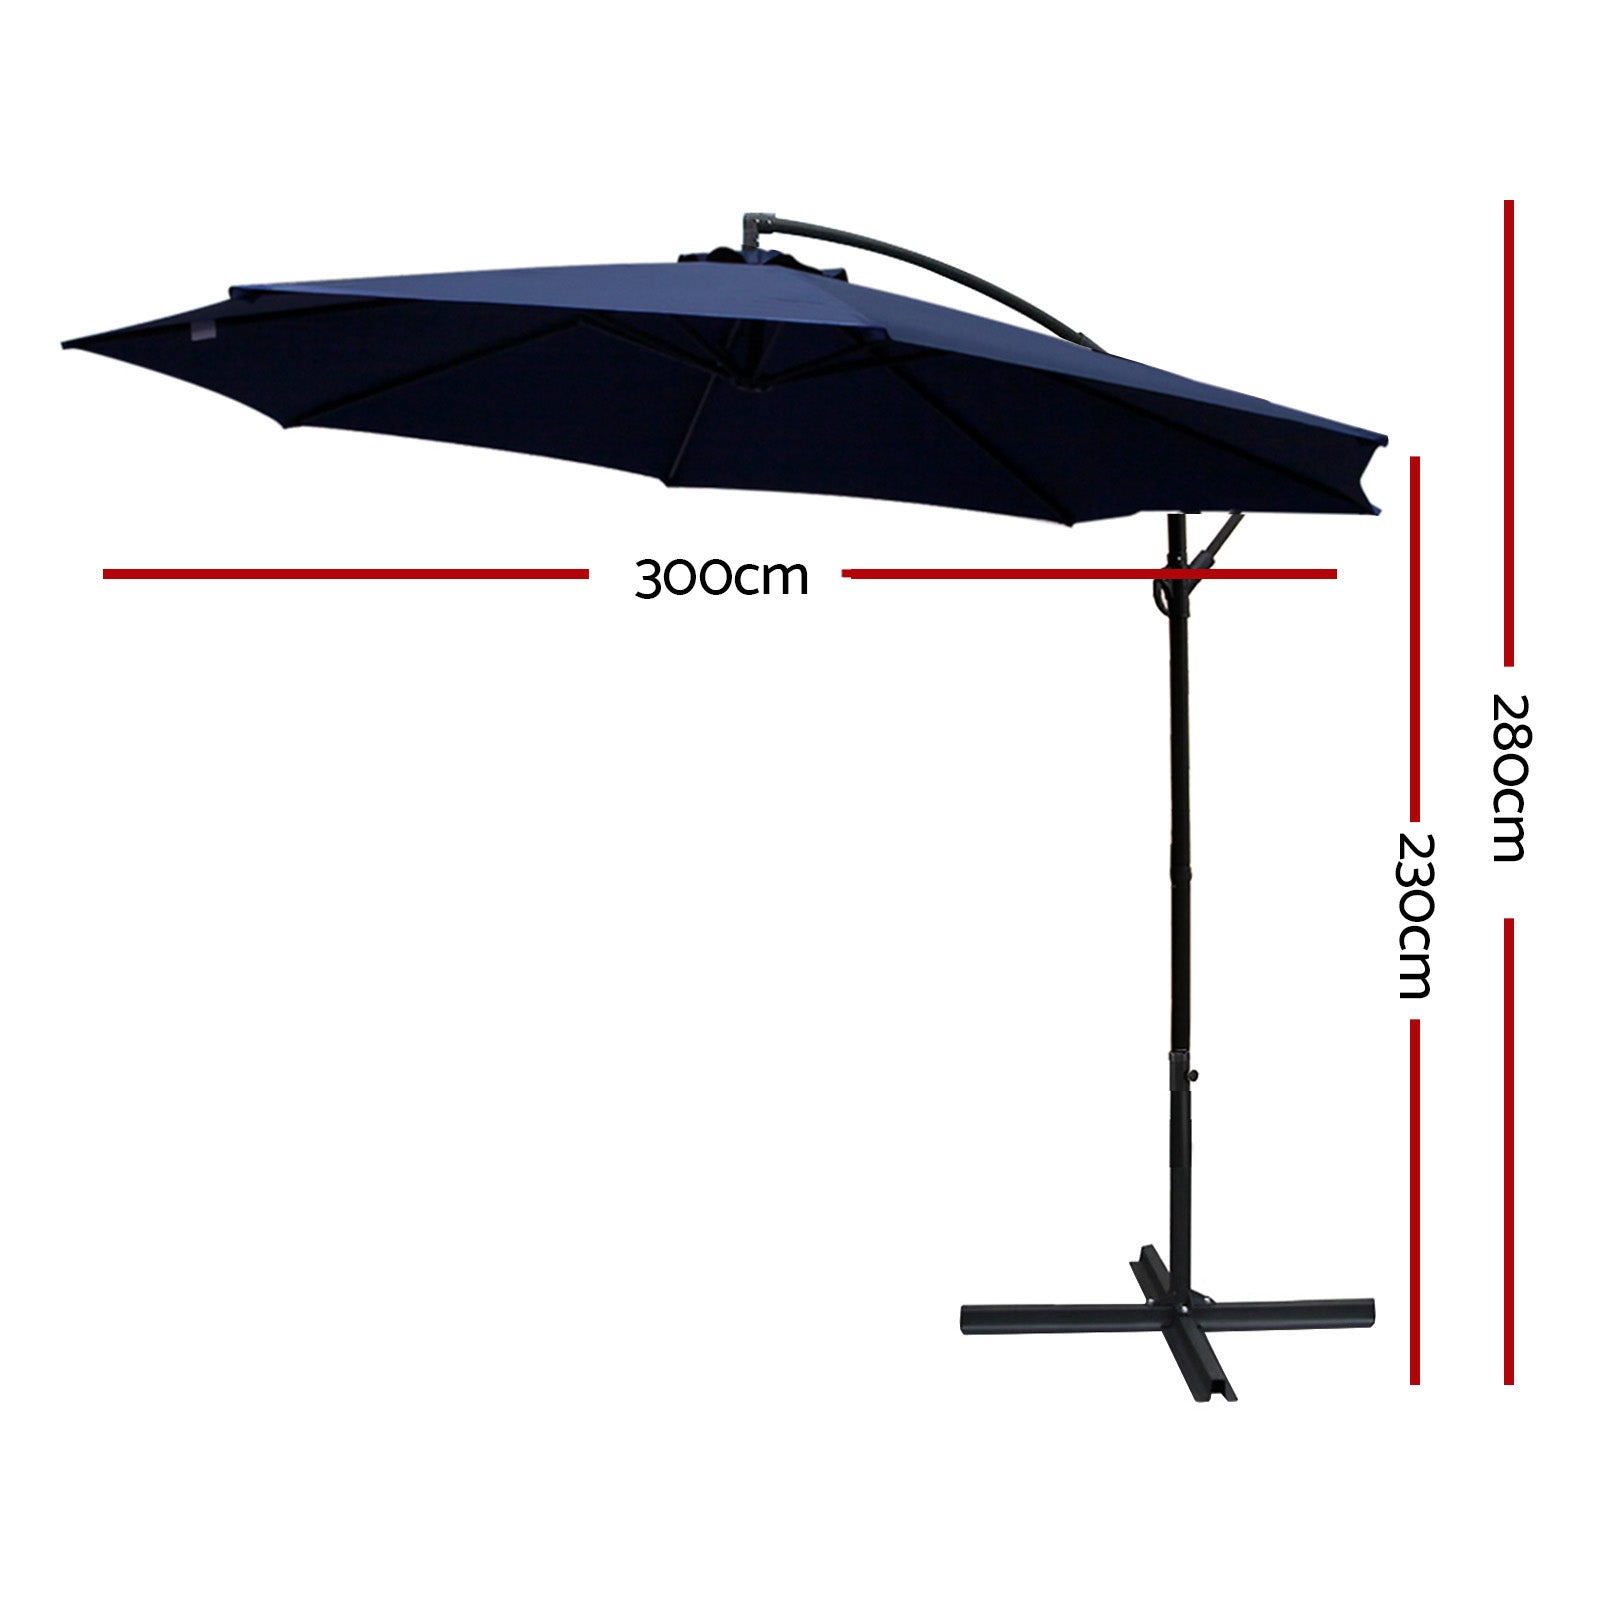 Instahut 3m Outdoor Umbrella Cantilever Beach Garden Patio Navy